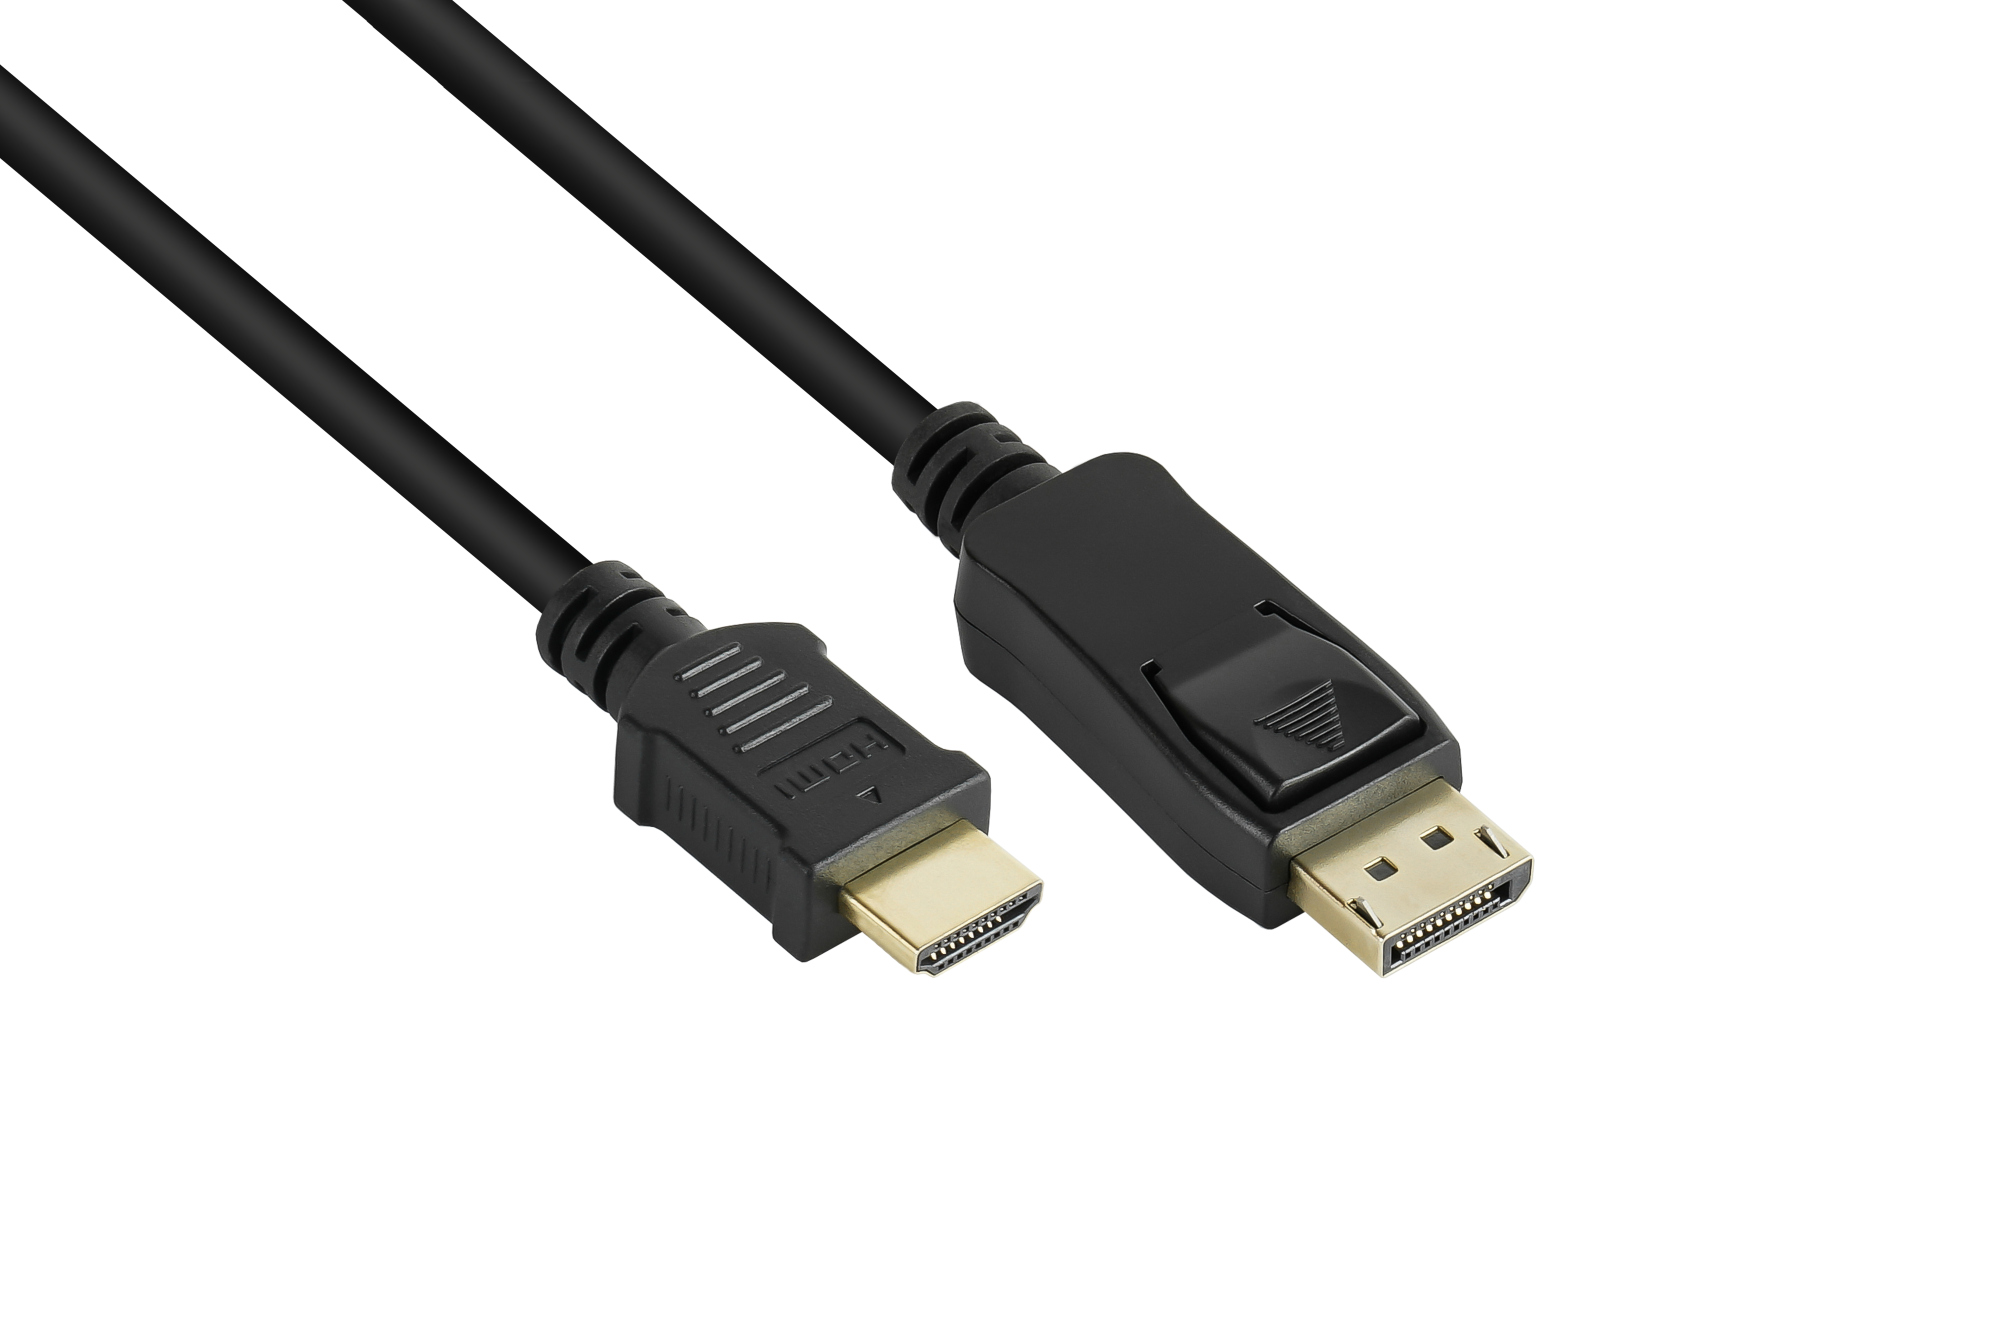 Anschlusskabel DisplayPort 1.2 an HDMI 1.4b, 4K @30Hz, vergoldete Kontakte, CU, schwarz, 2m